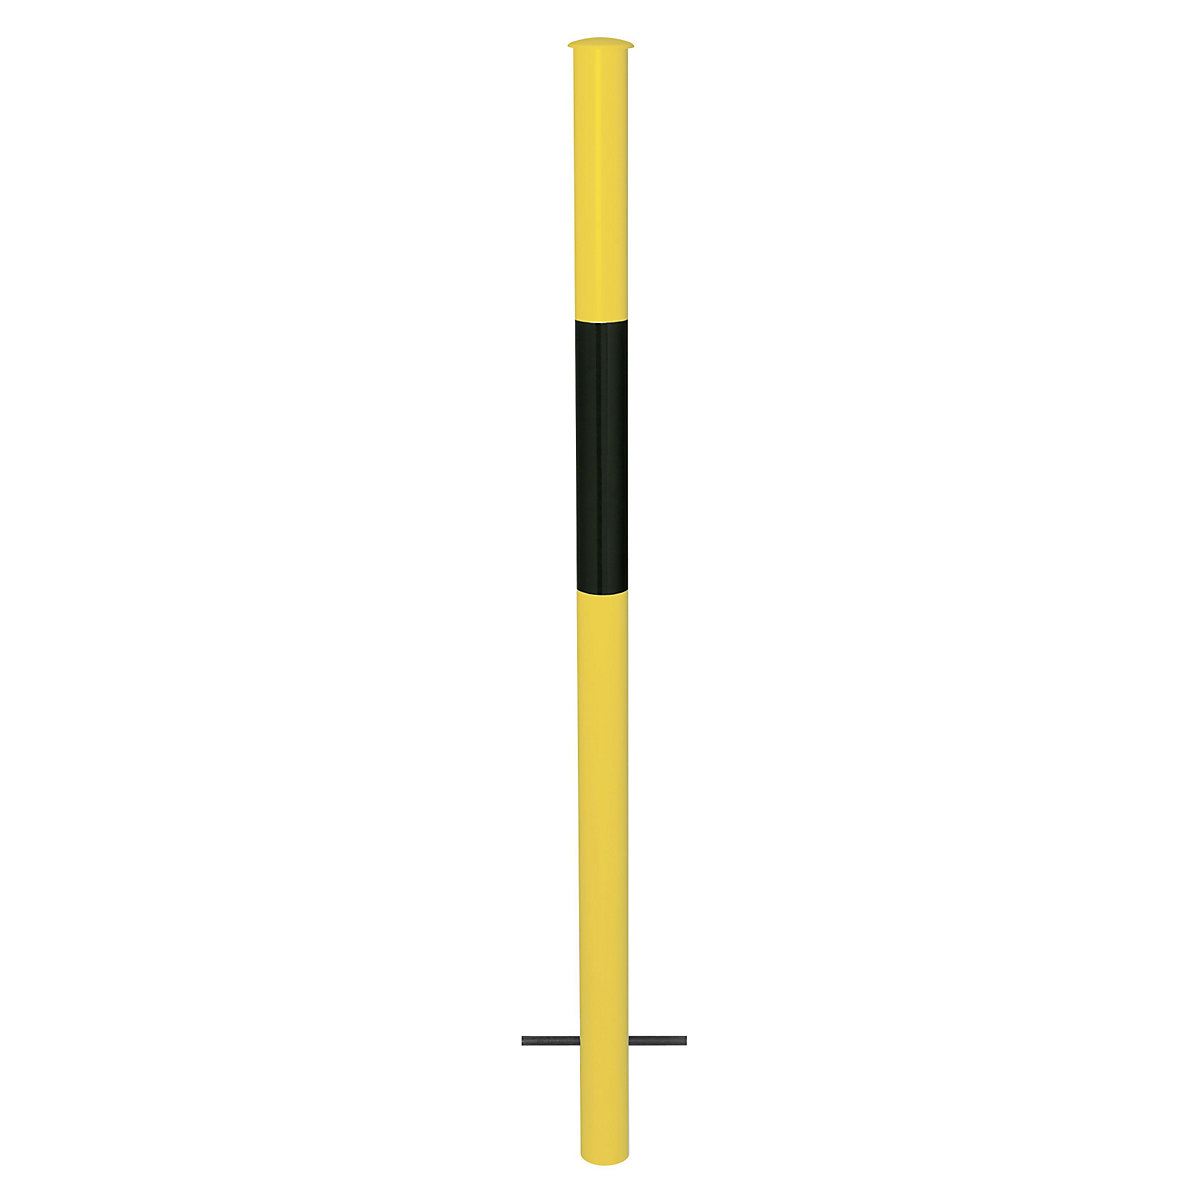 Sustav ograda, cijev stalka za betoniranje, u žutoj/crnoj boji-5